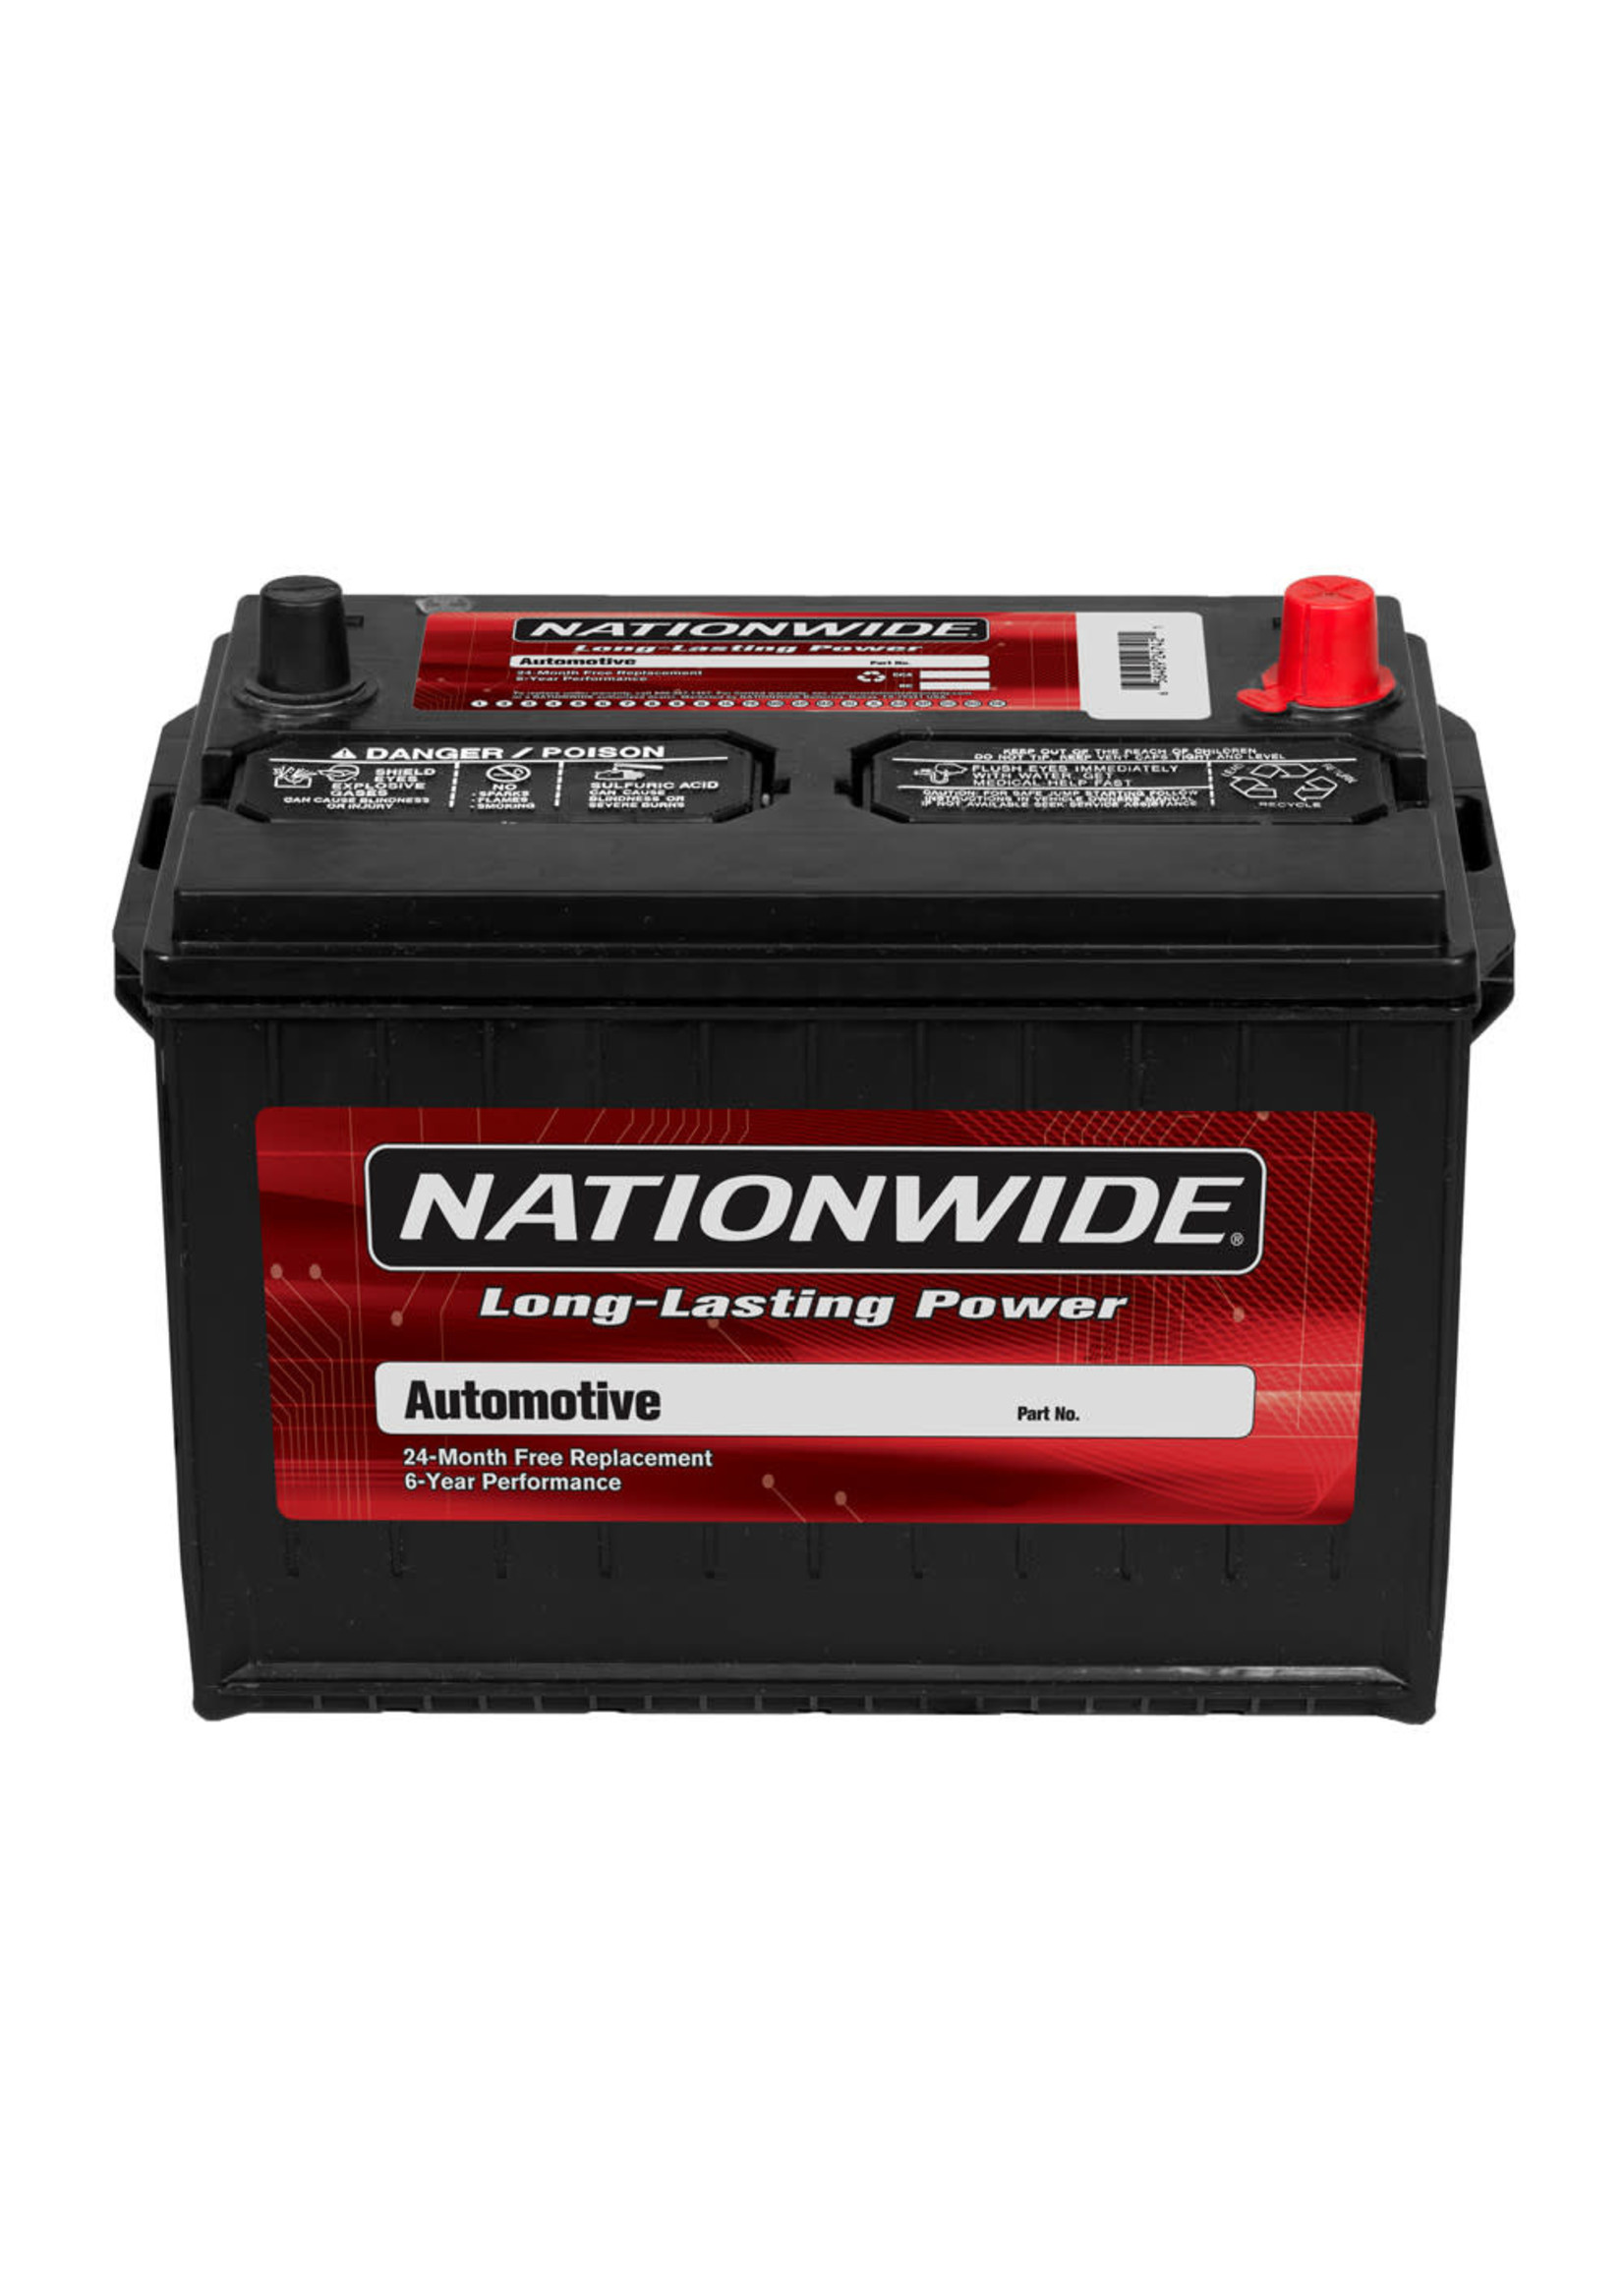 Nationwide/BatteryPro 78DT-800